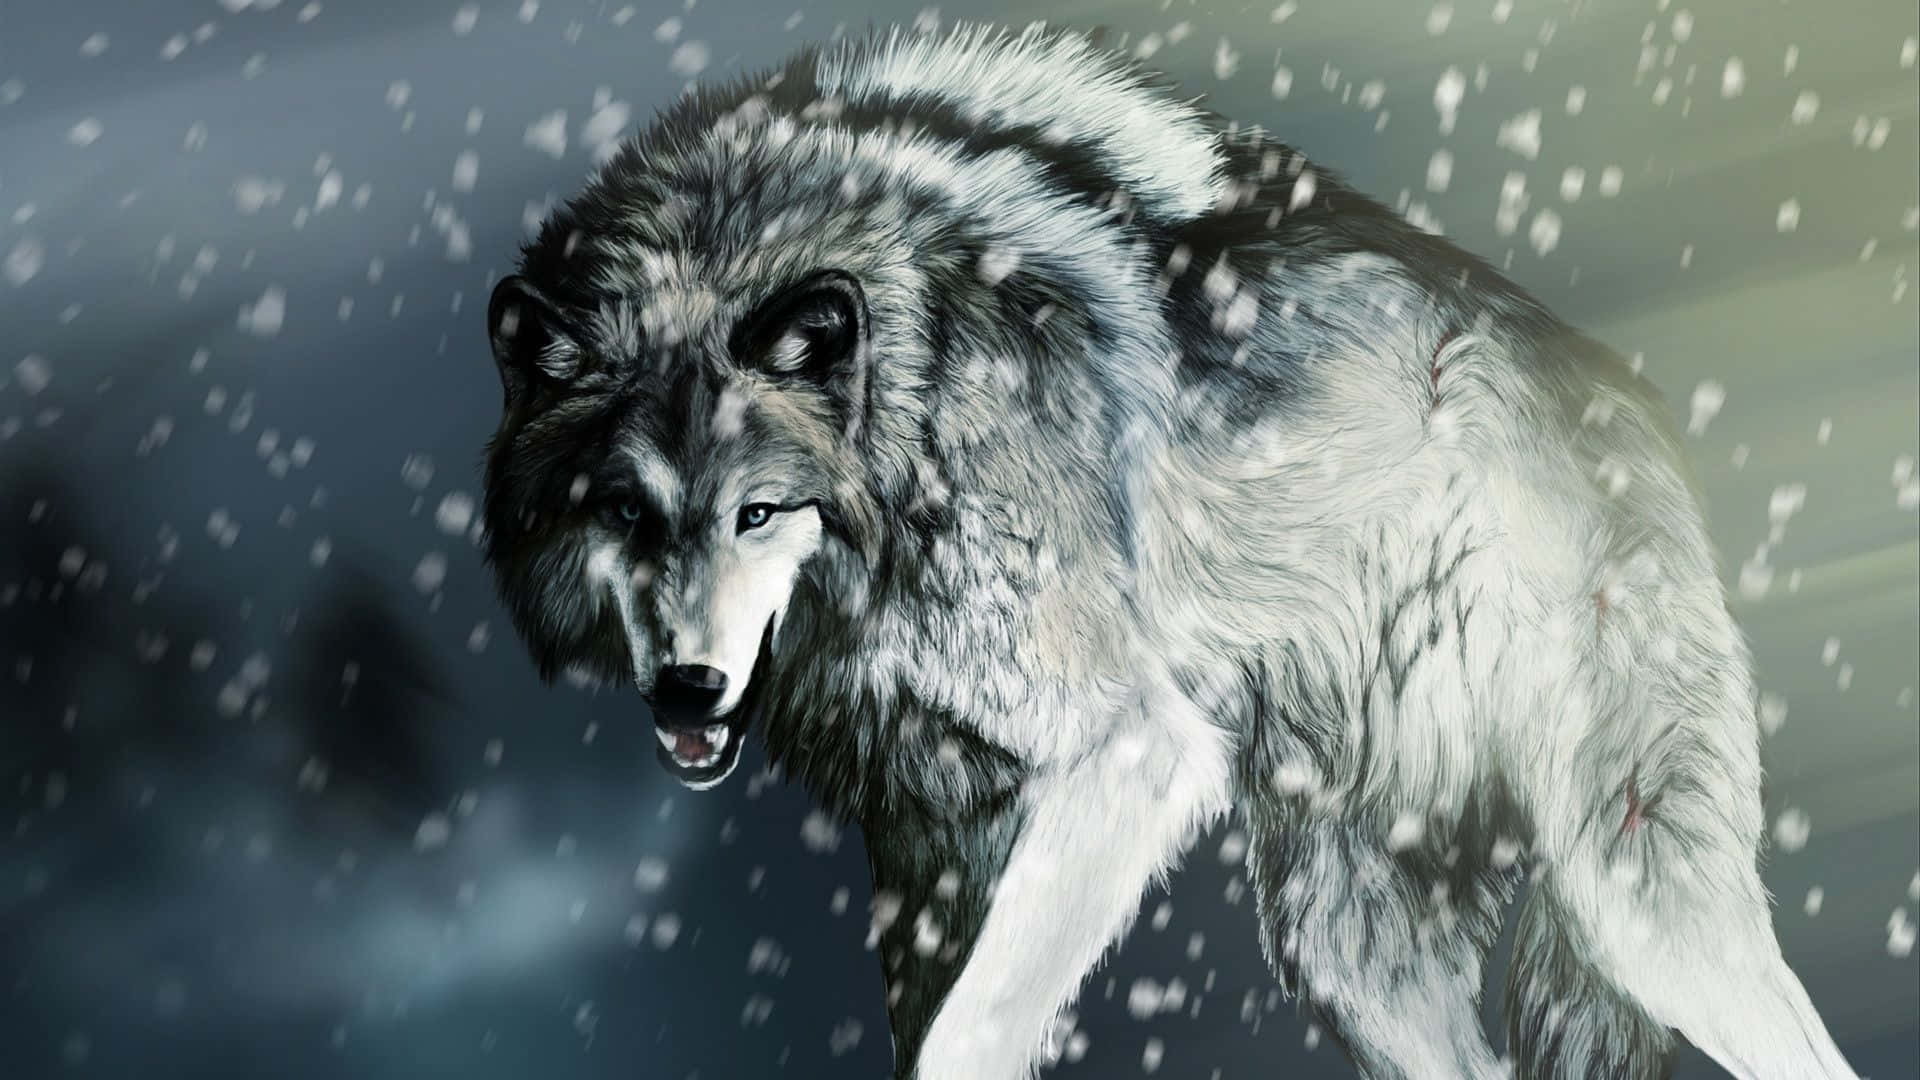 En kraftig og majestætisk hvid ulv kommer til live på denne tapet. Wallpaper